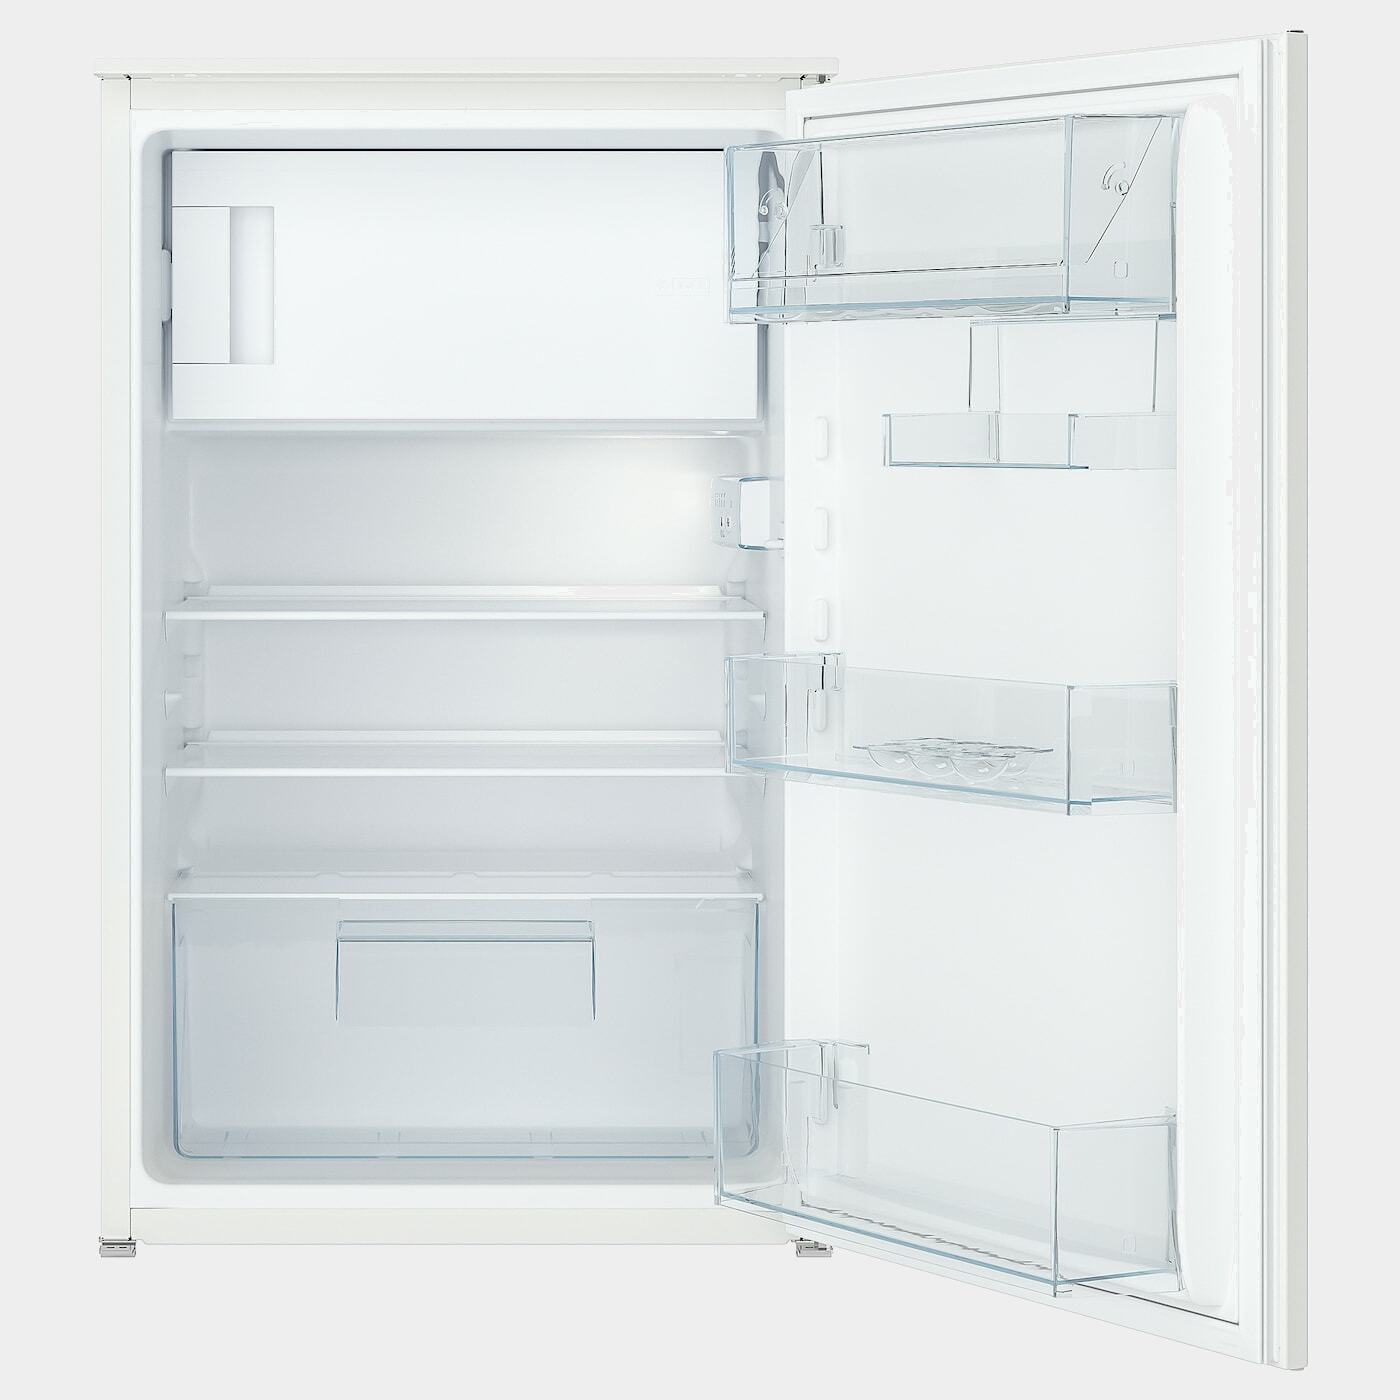 SVALKAS Kühlschrank mit Gefrierfach  -  - Möbel Ideen für dein Zuhause von Home Trends. Möbel Trends von Social Media Influencer für dein Skandi Zuhause.